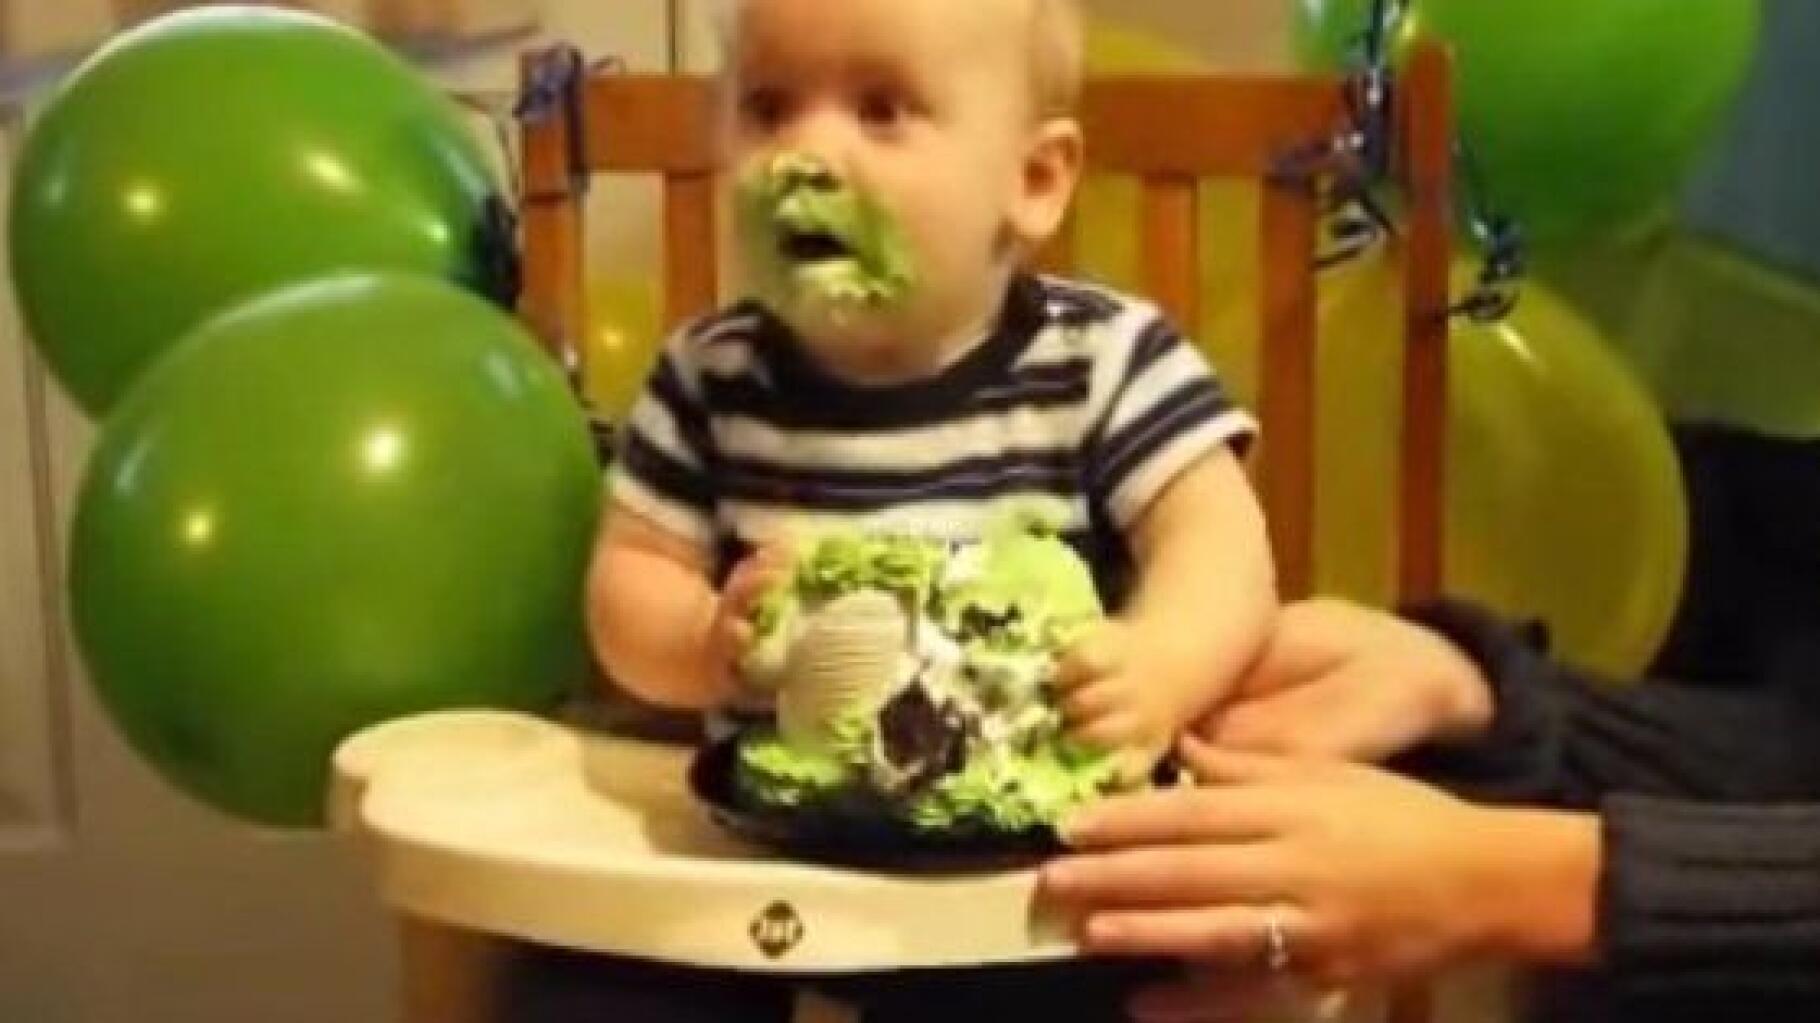 Bébé Garçon 1 An Avec Un Gâteau Et Des Ballons, Anniversaire D'un Enfant 1  An, Bébé Mange Un Gâteau